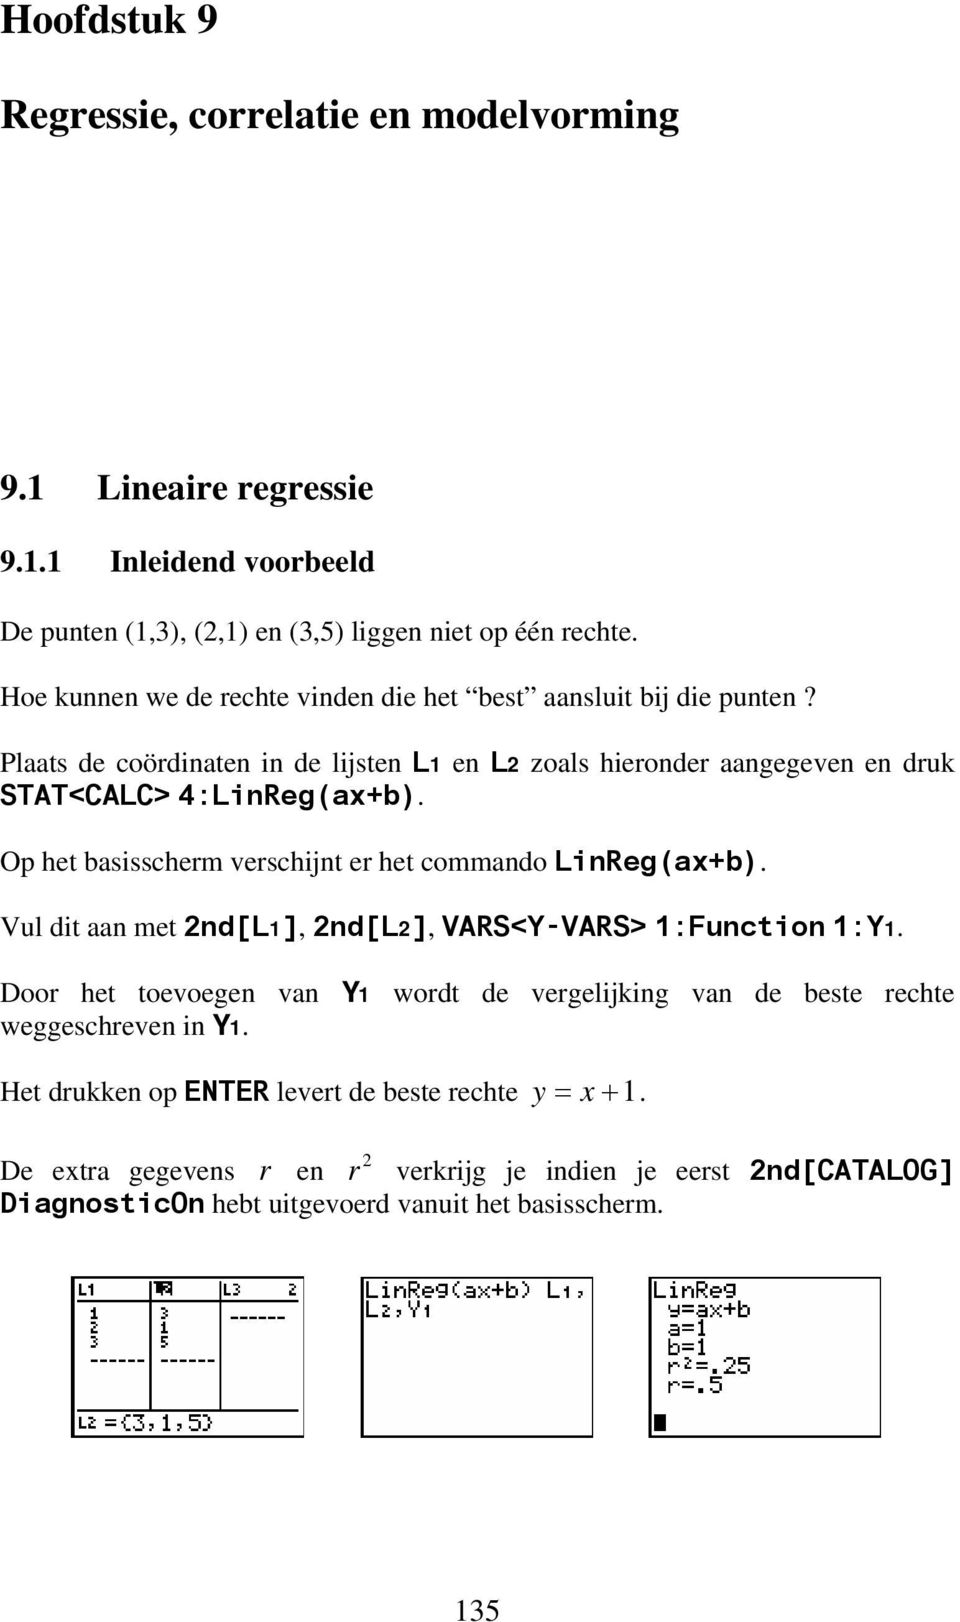 Op het bassscherm verschjt er het commado LReg(ax+b). Vul dt aa met d[l], d[l], VARS<Y-VARS> :Fucto :Y.